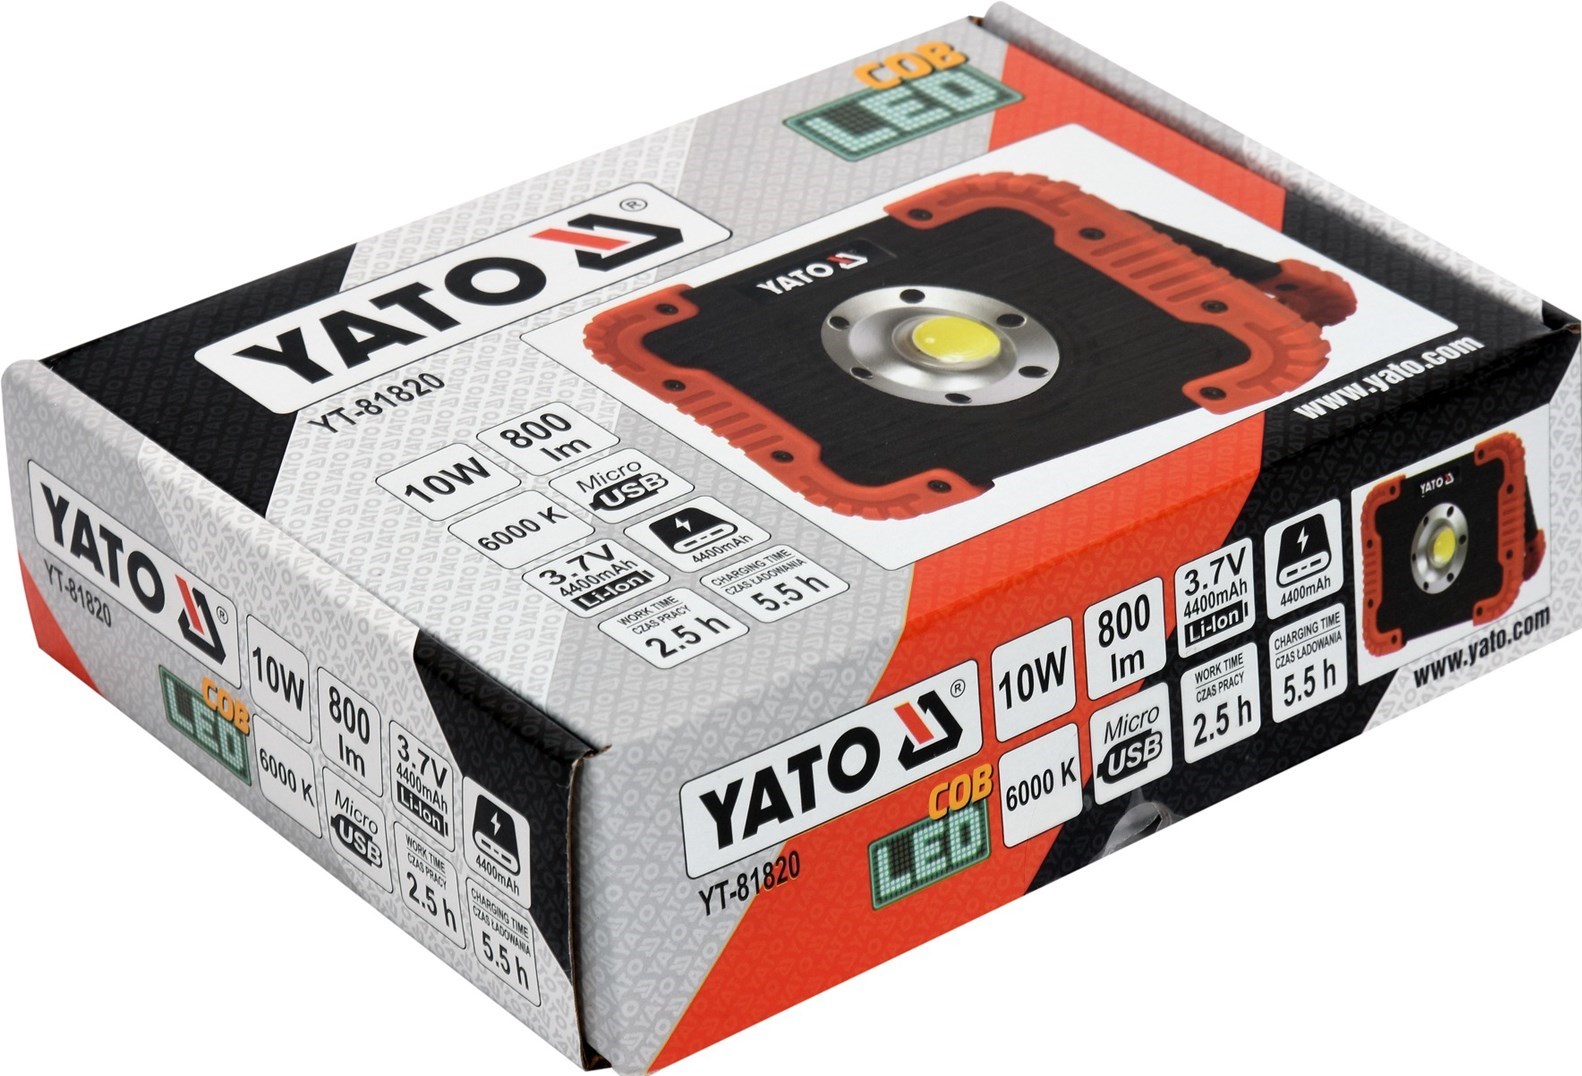 YATO Nabíjecí COB LED 10W svítilna a powerbanka YT-81820